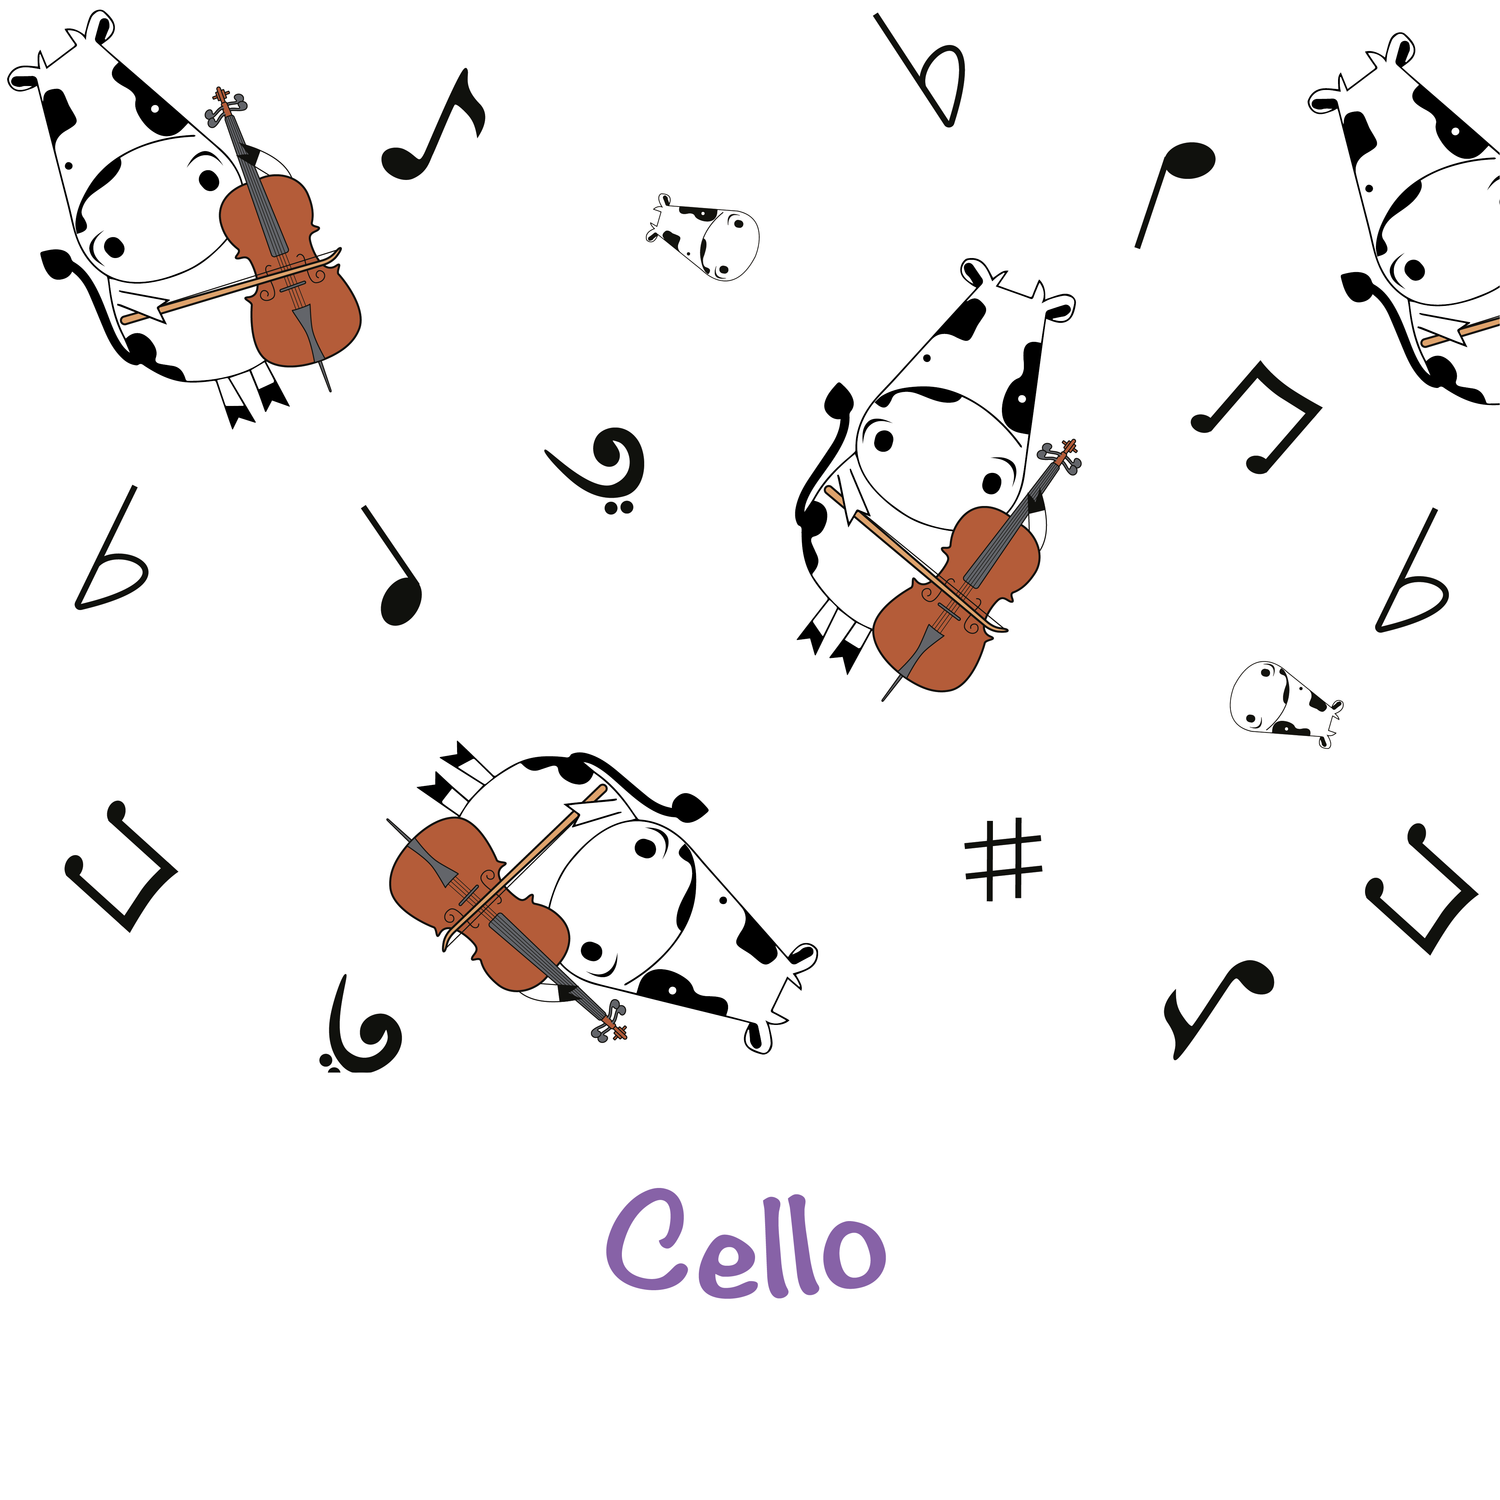 Cello Time